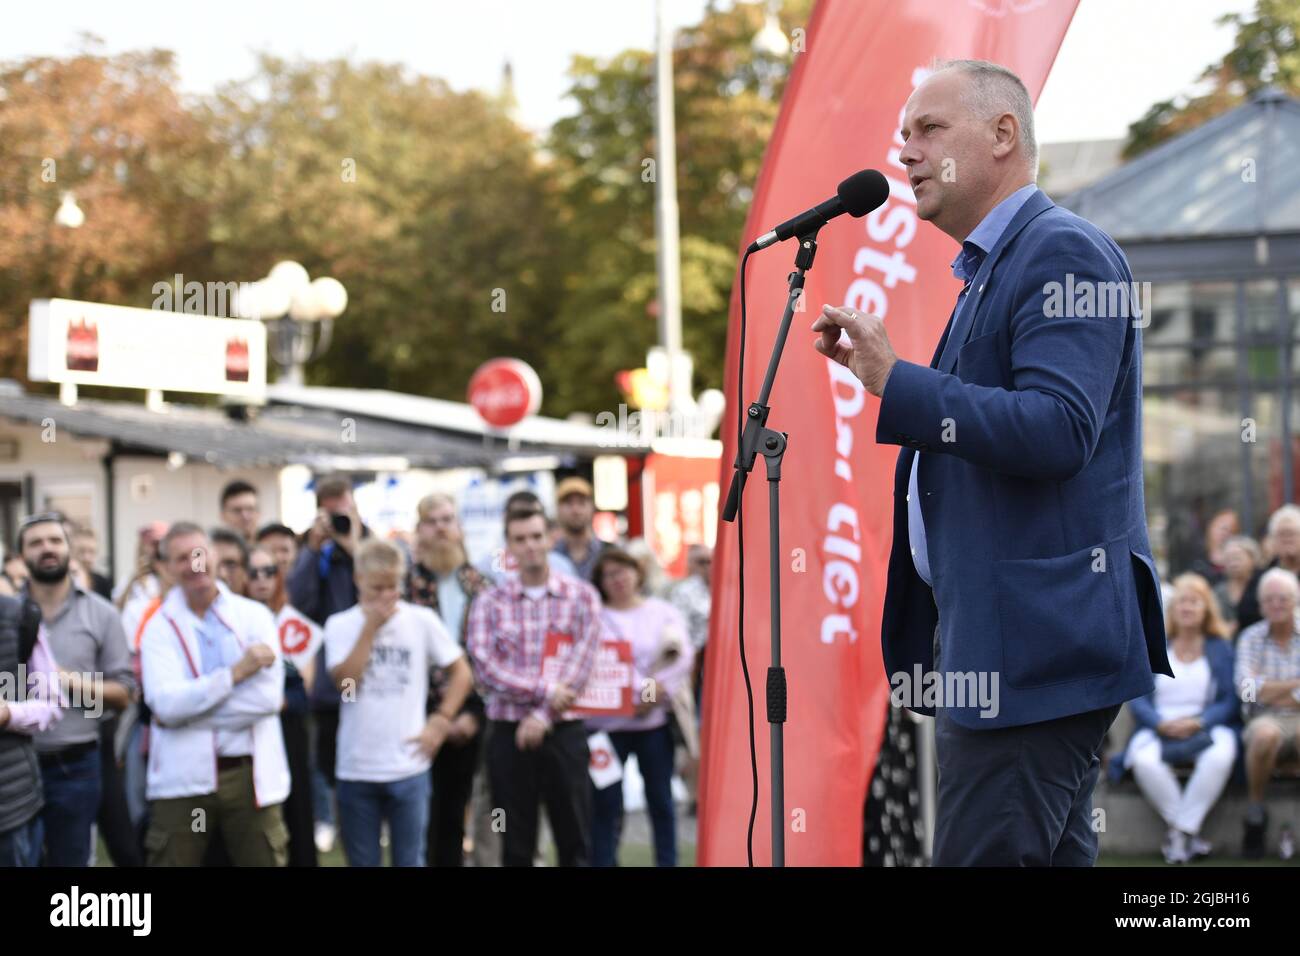 Jonas Sjostedt, leader del partito di sinistra, parla durante un raduno elettorale nel centro di Stoccolma, Svezia, 8 settembre 2018. Foto: Erik Simander / TT / Kod 11720 Foto Stock